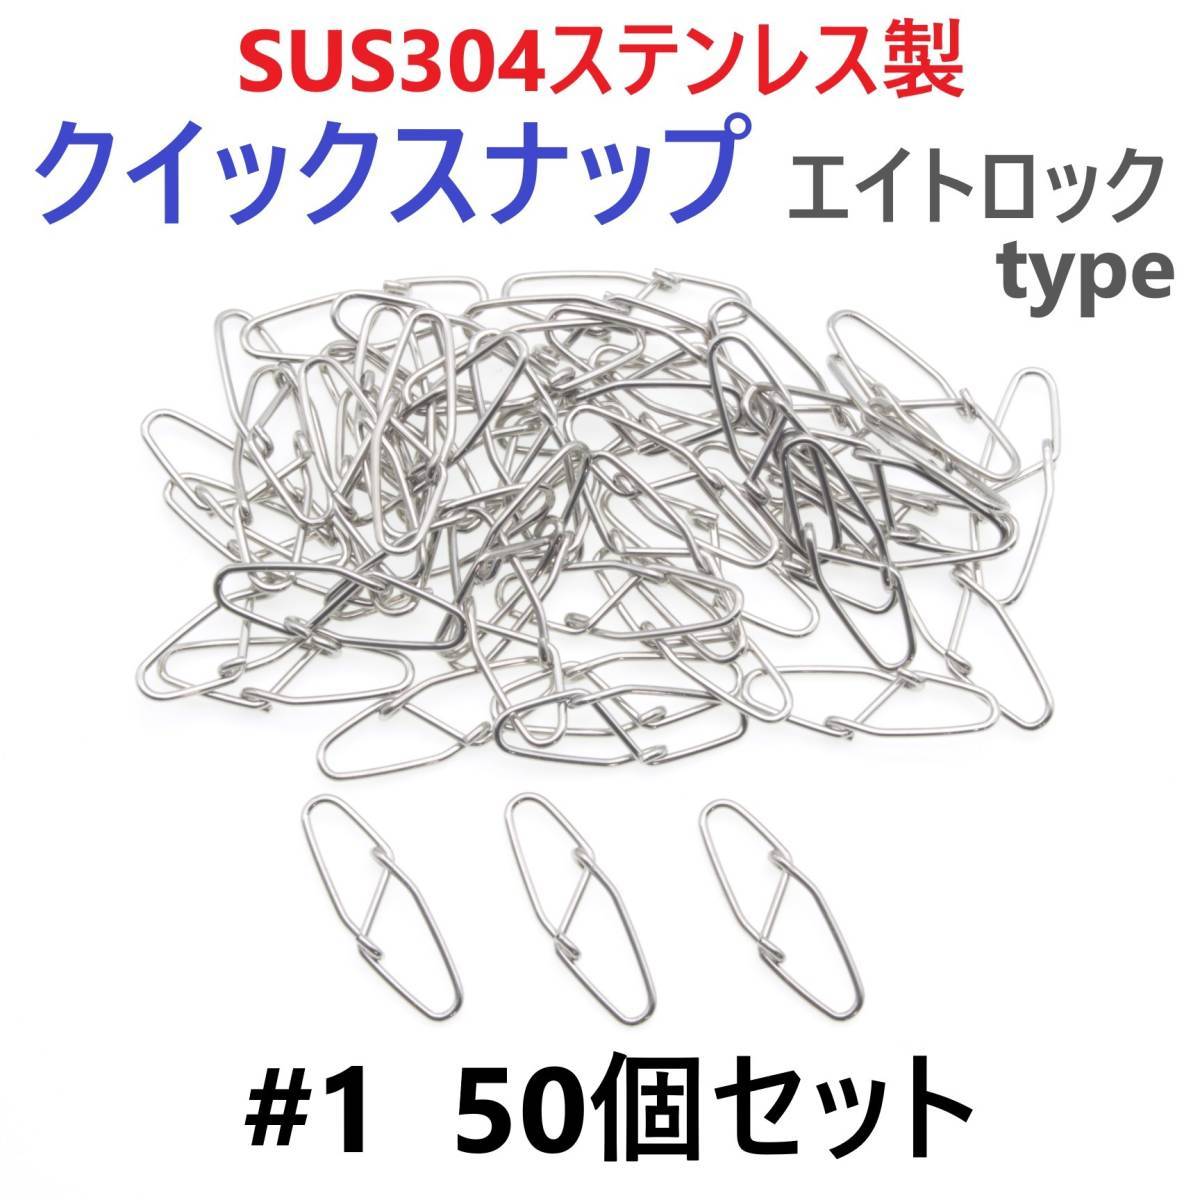 【送料無料】SUS304 ステンレス製 強力クイックスナップ エイトロックタイプ #1 50個セット 両開き ルアー 仕掛けに！ 防錆 スナップ_画像1